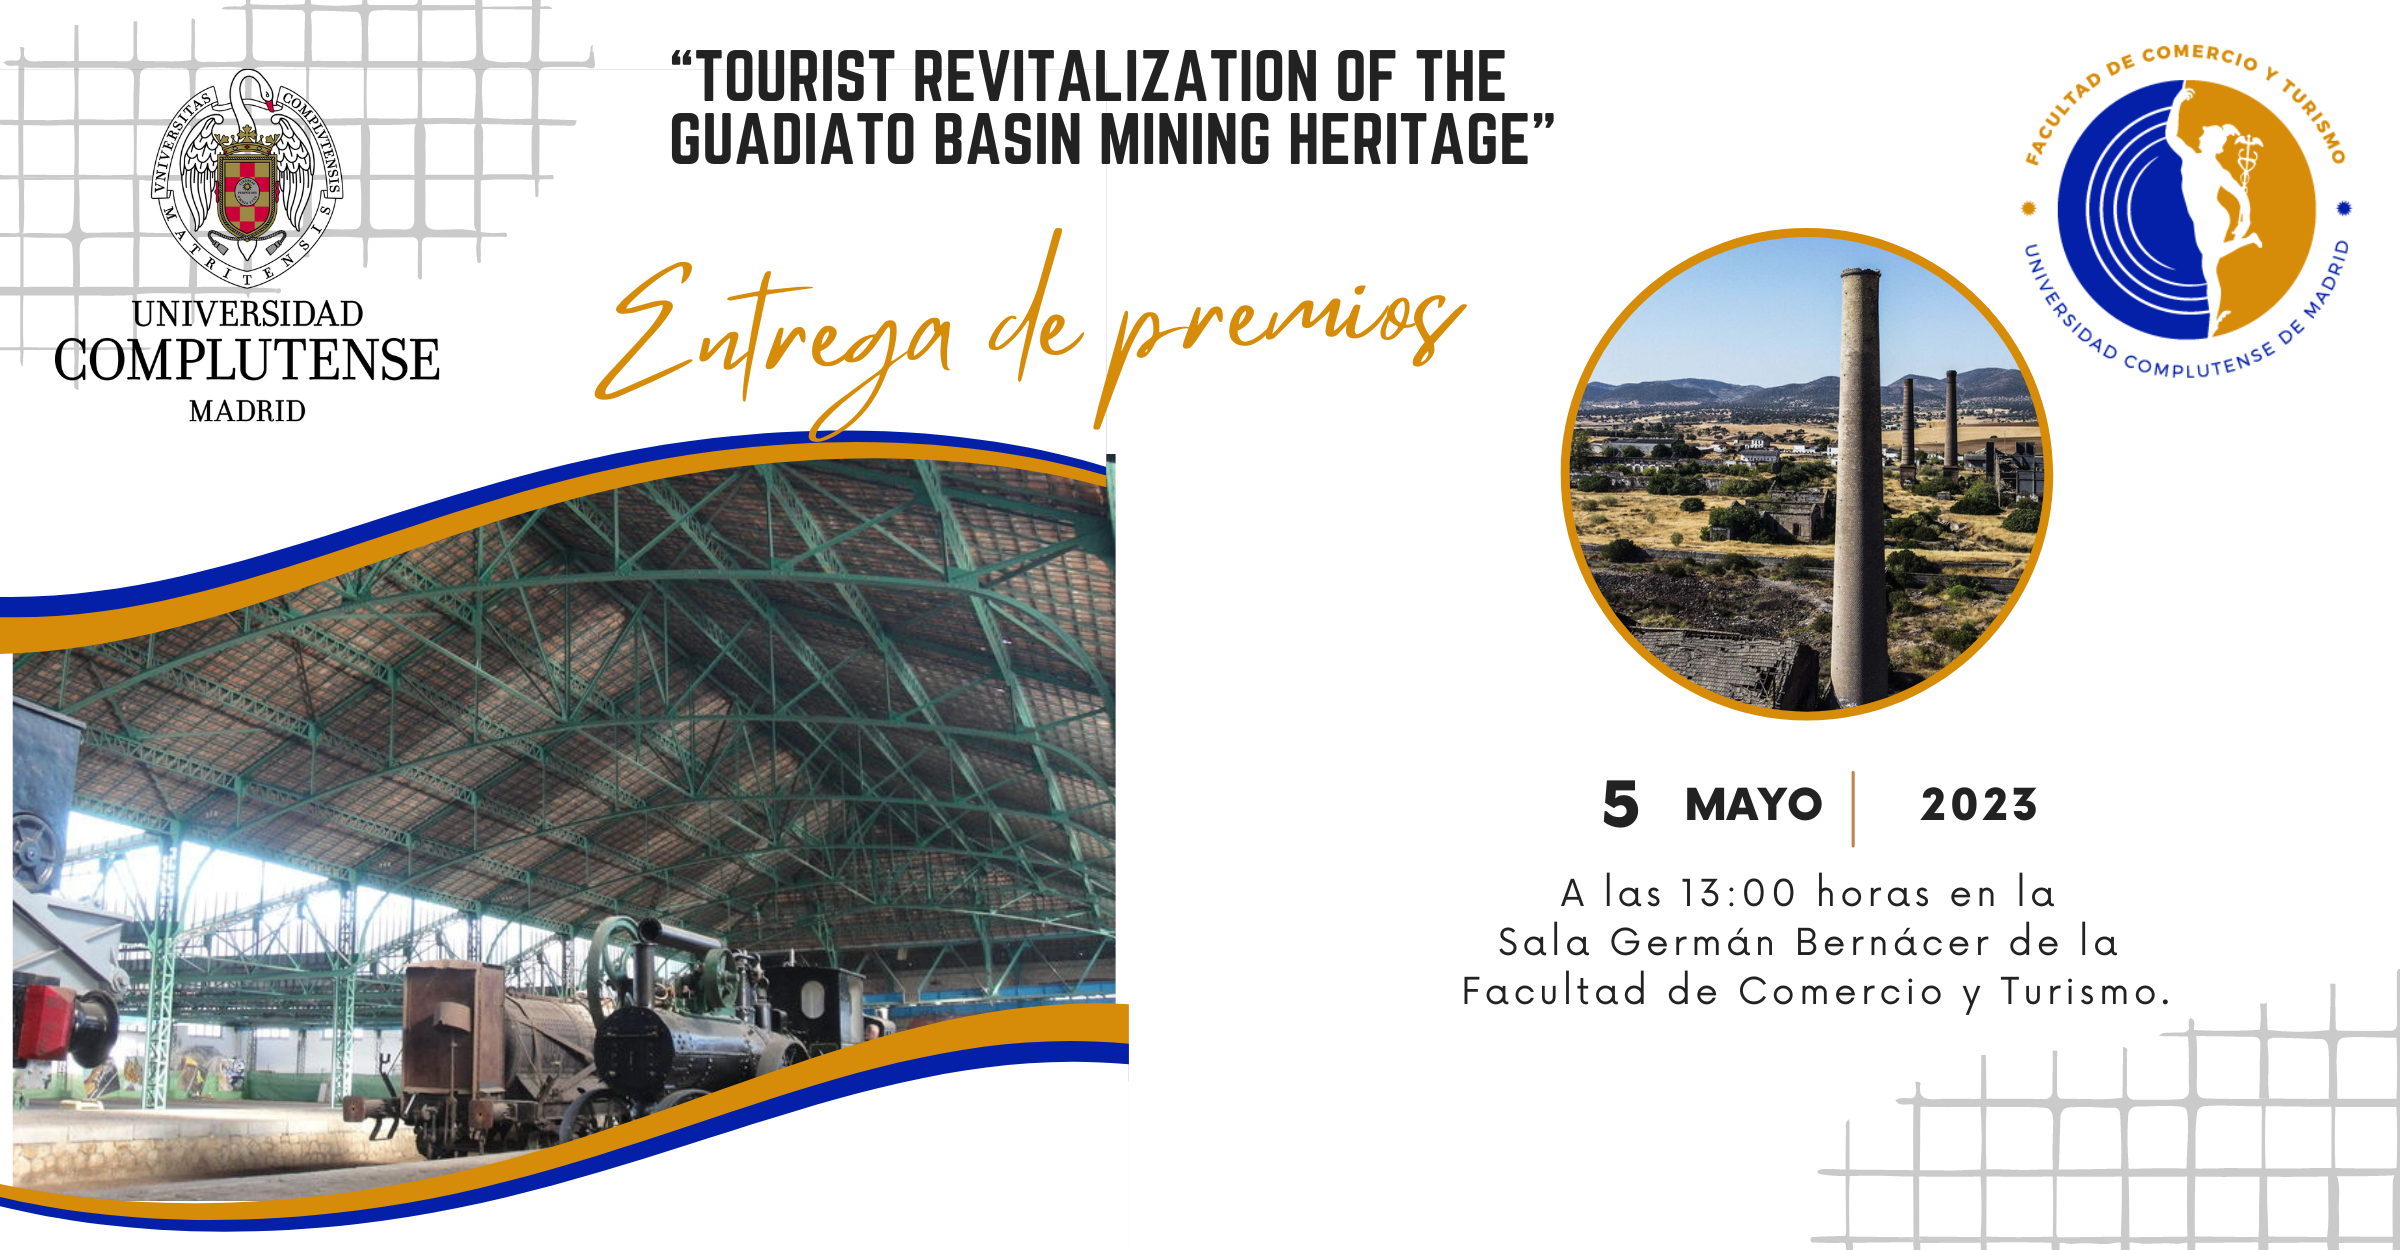 Tourist revitalization of the Guadiato basin mining heritage